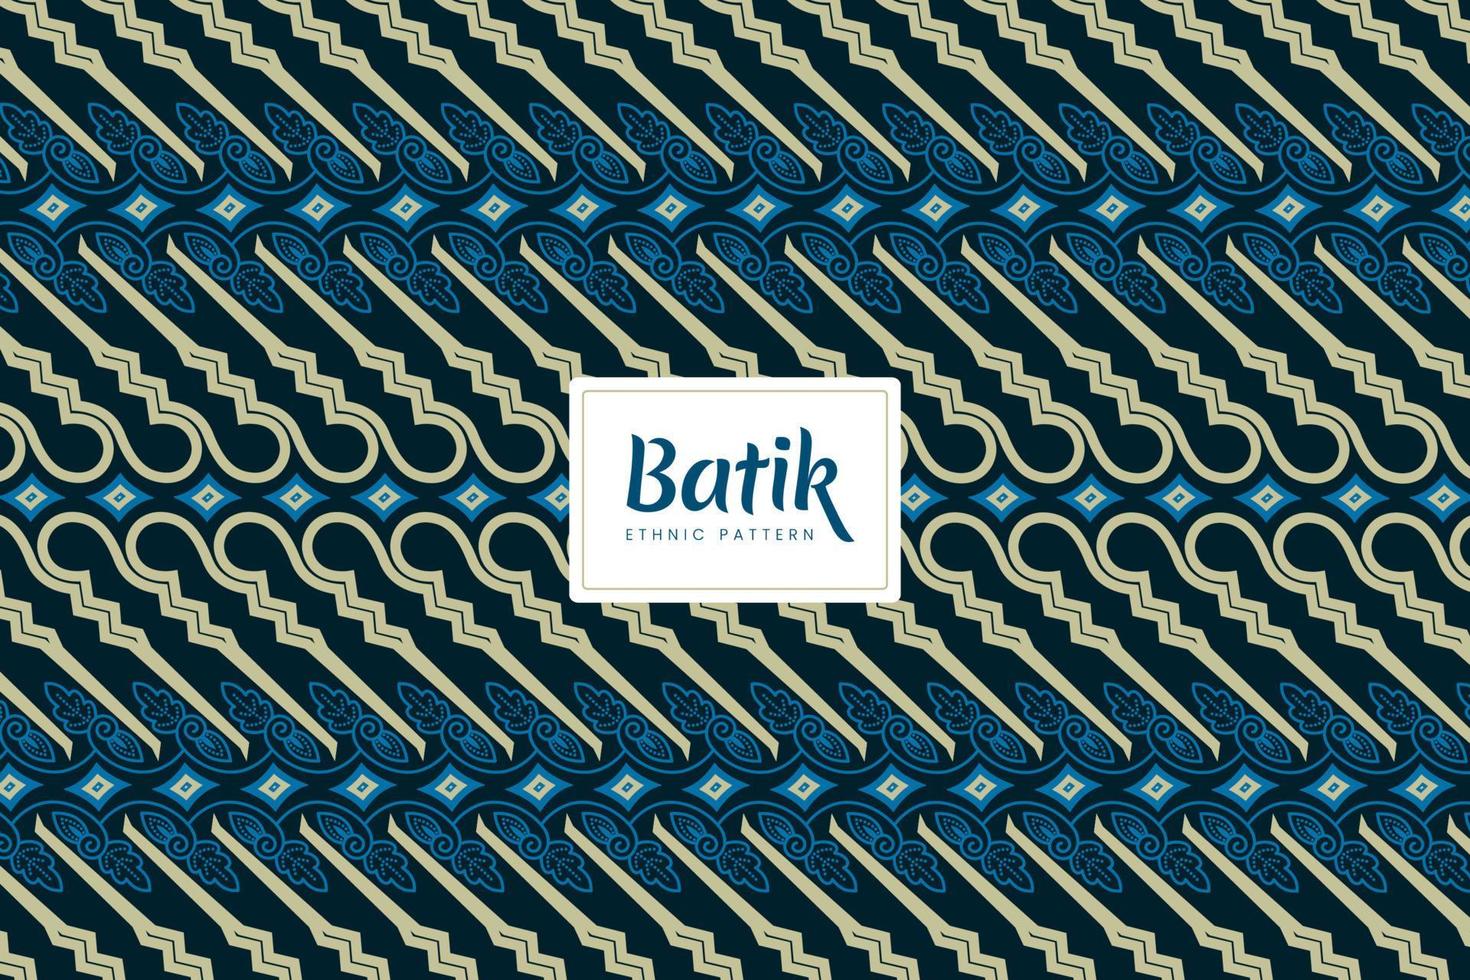 batik indonésien parang traditionnel décoratif motifs floraux vecteur bleu marine